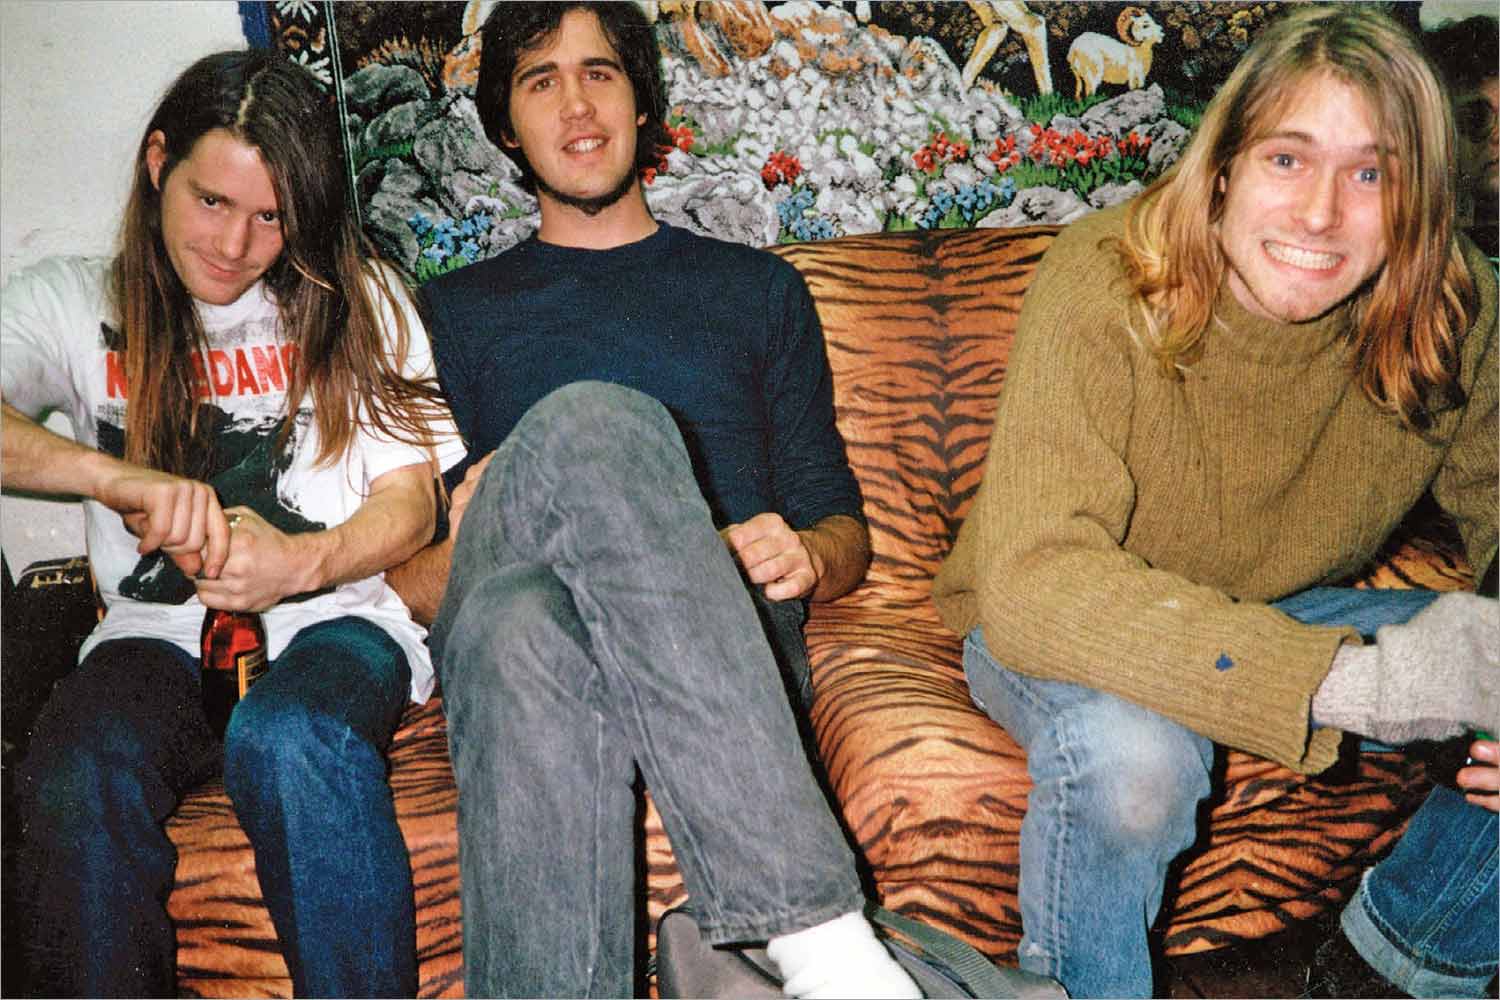 美国油渍摇滚乐队Nirvana(涅槃乐队)1989-2019年发行专辑、现场辑、单曲合集[无损FLAC/19.80GB]百度云盘打包下载 影音资源 第1张